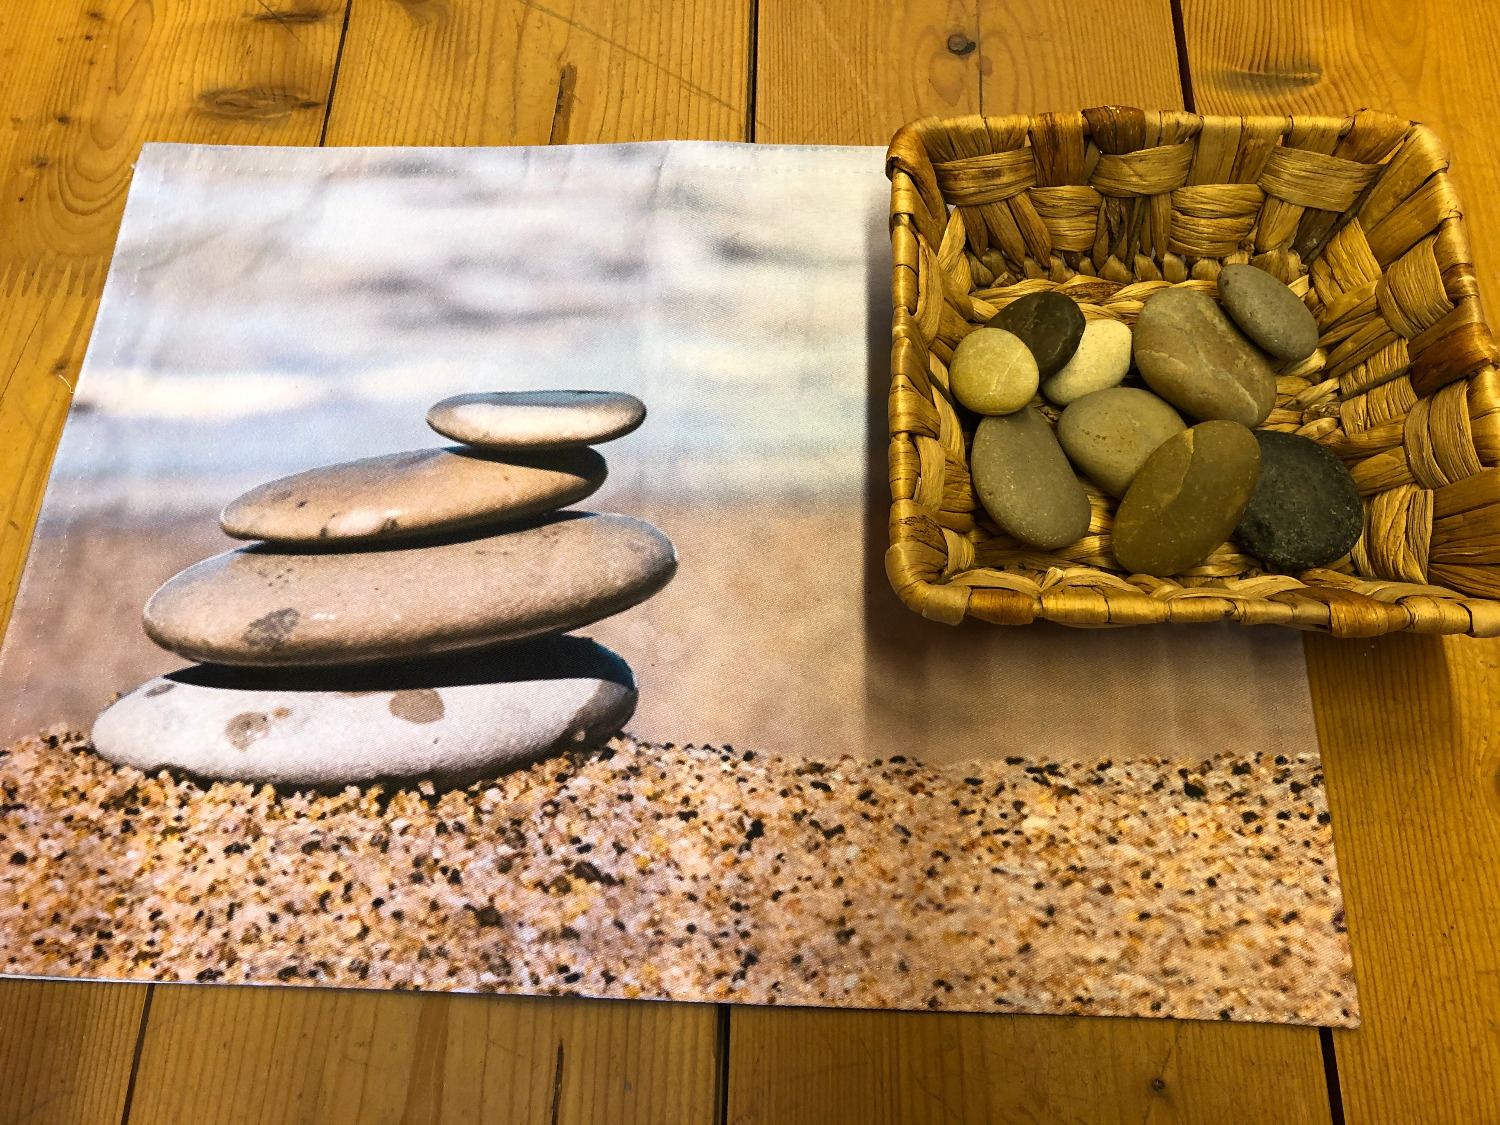 Titelbild zur Idee für die Beschäftigung mit Kindern '(60) Spielen mit Steinen: Steintürme bauen'